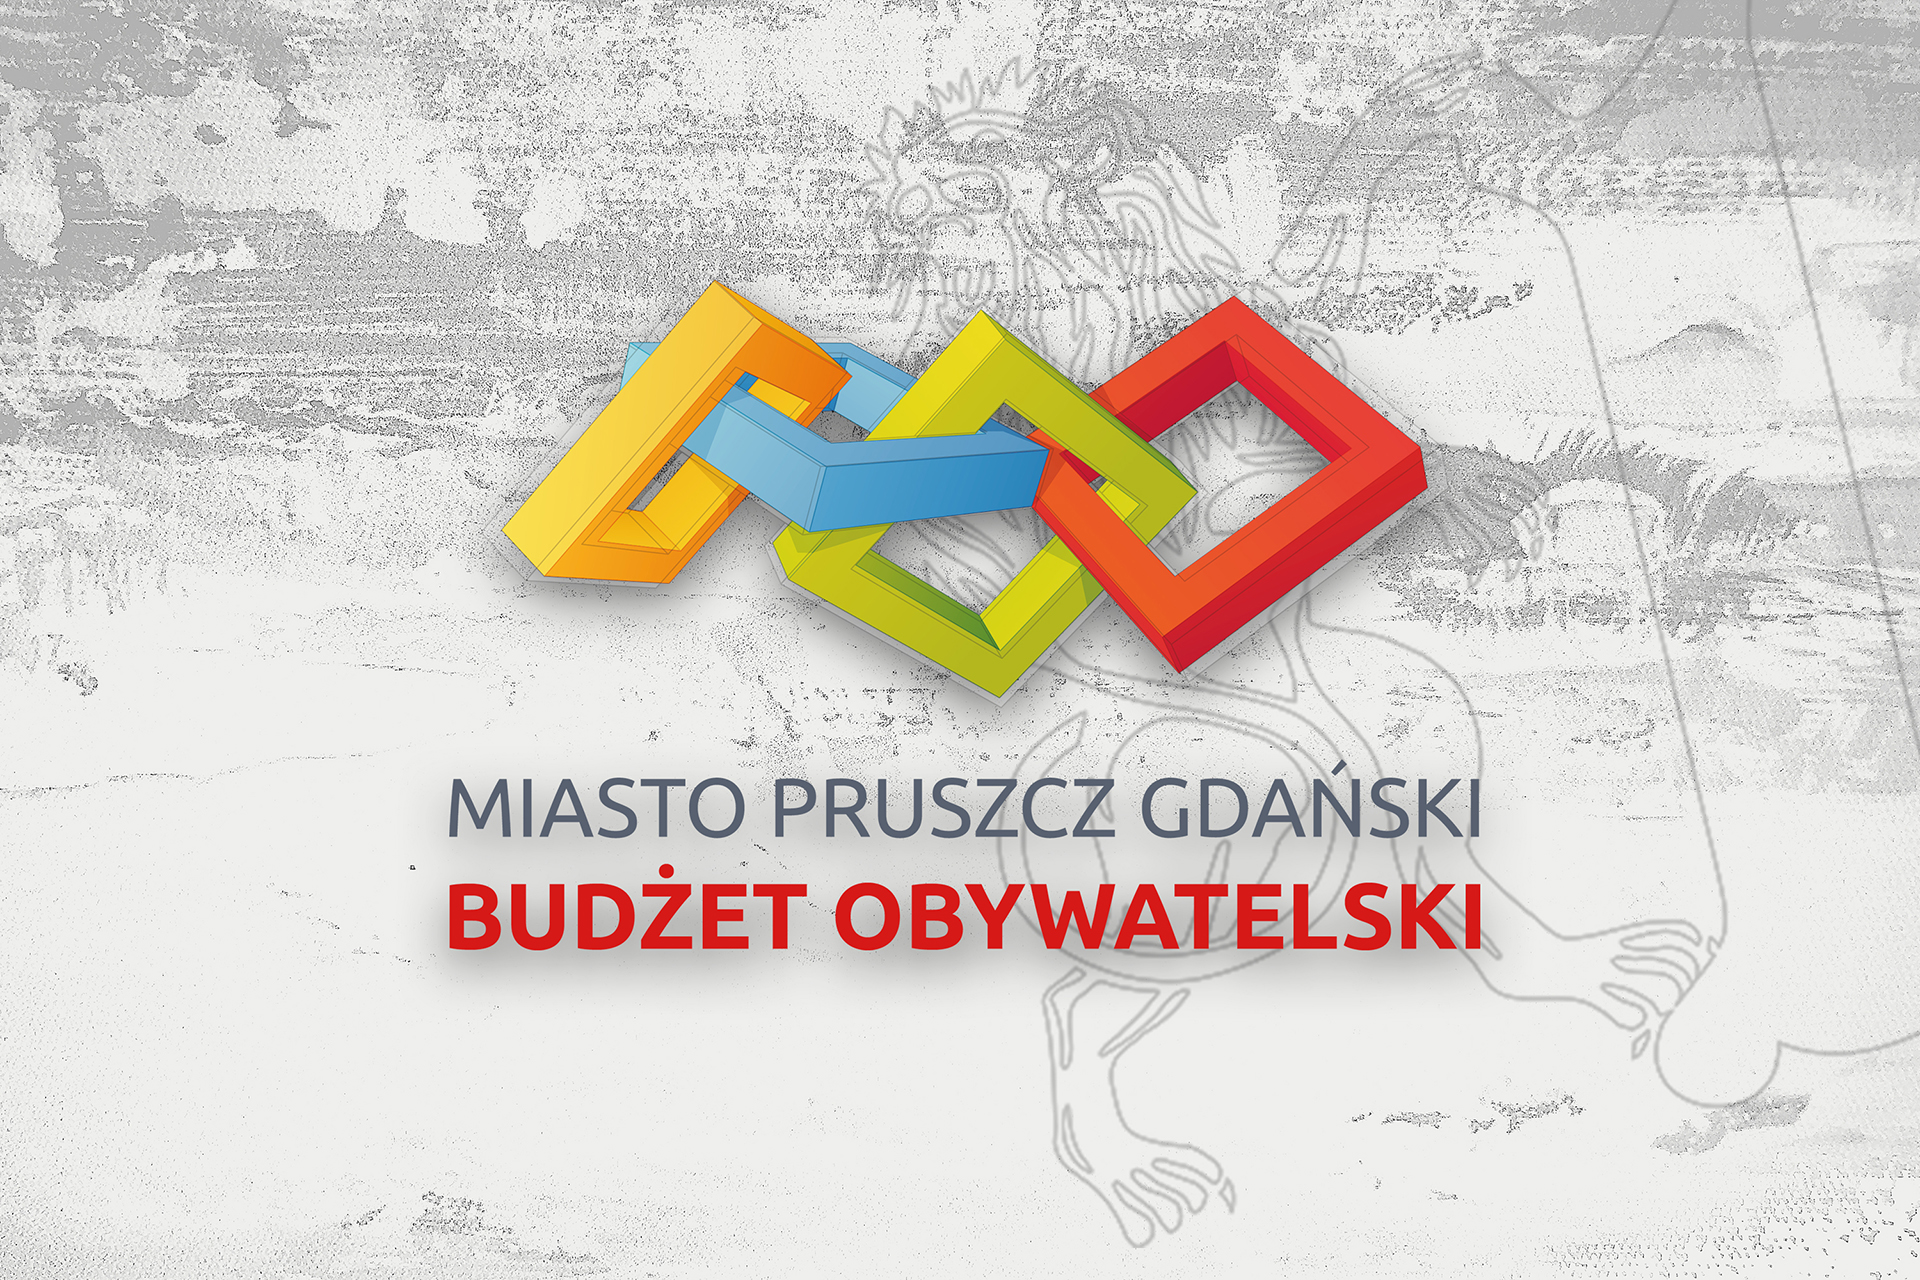 Budżet Obywatelski, głosowanie od 13 do 27 września - poznaj projekty!